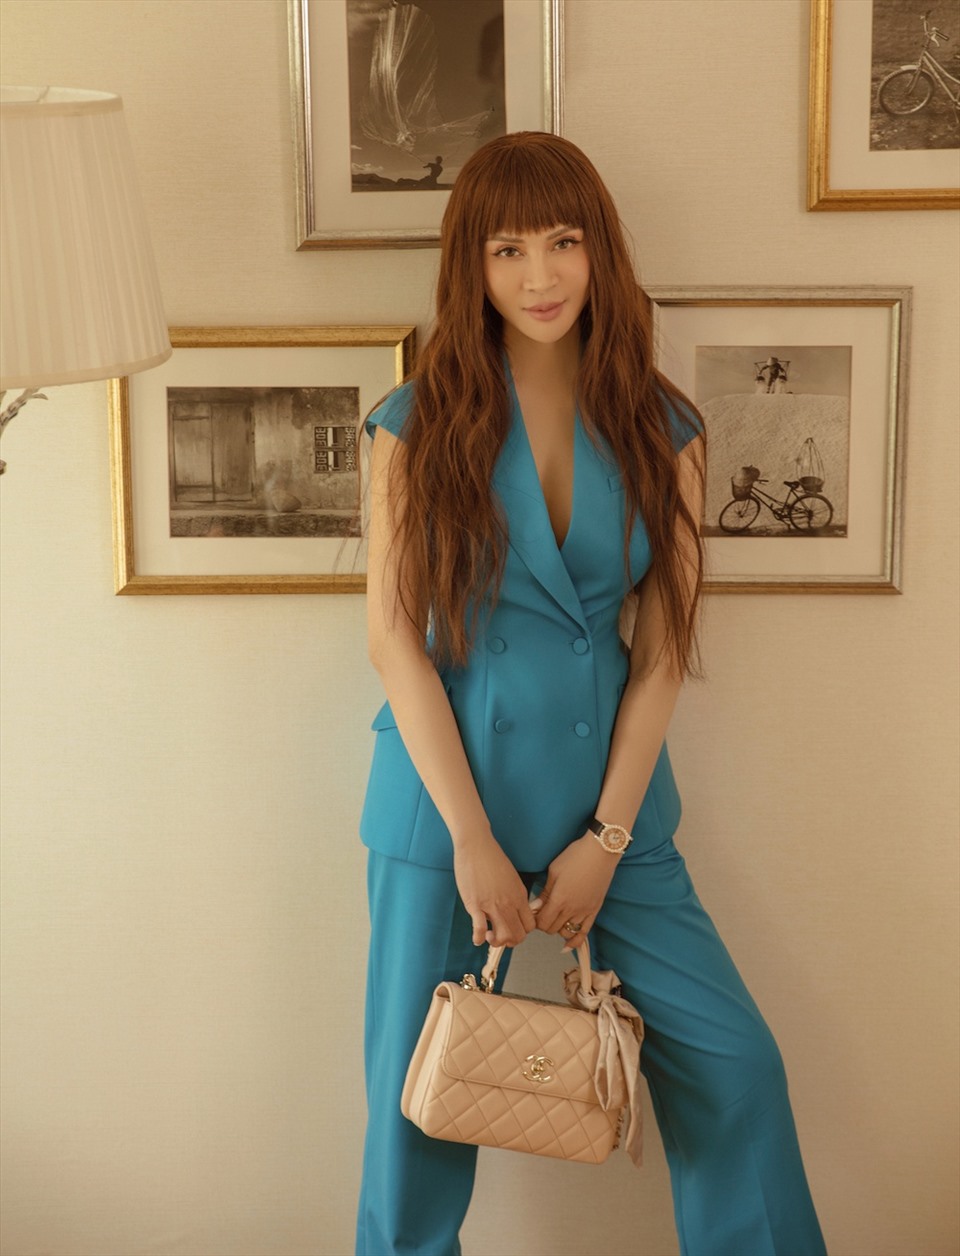 Thời trang công sở của MC Thanh Mai cũng ngập tràn màu sắc và kiểu dáng đa dạng. Sắc xanh của trang phục tôn lên làn da trắng của người đẹp.